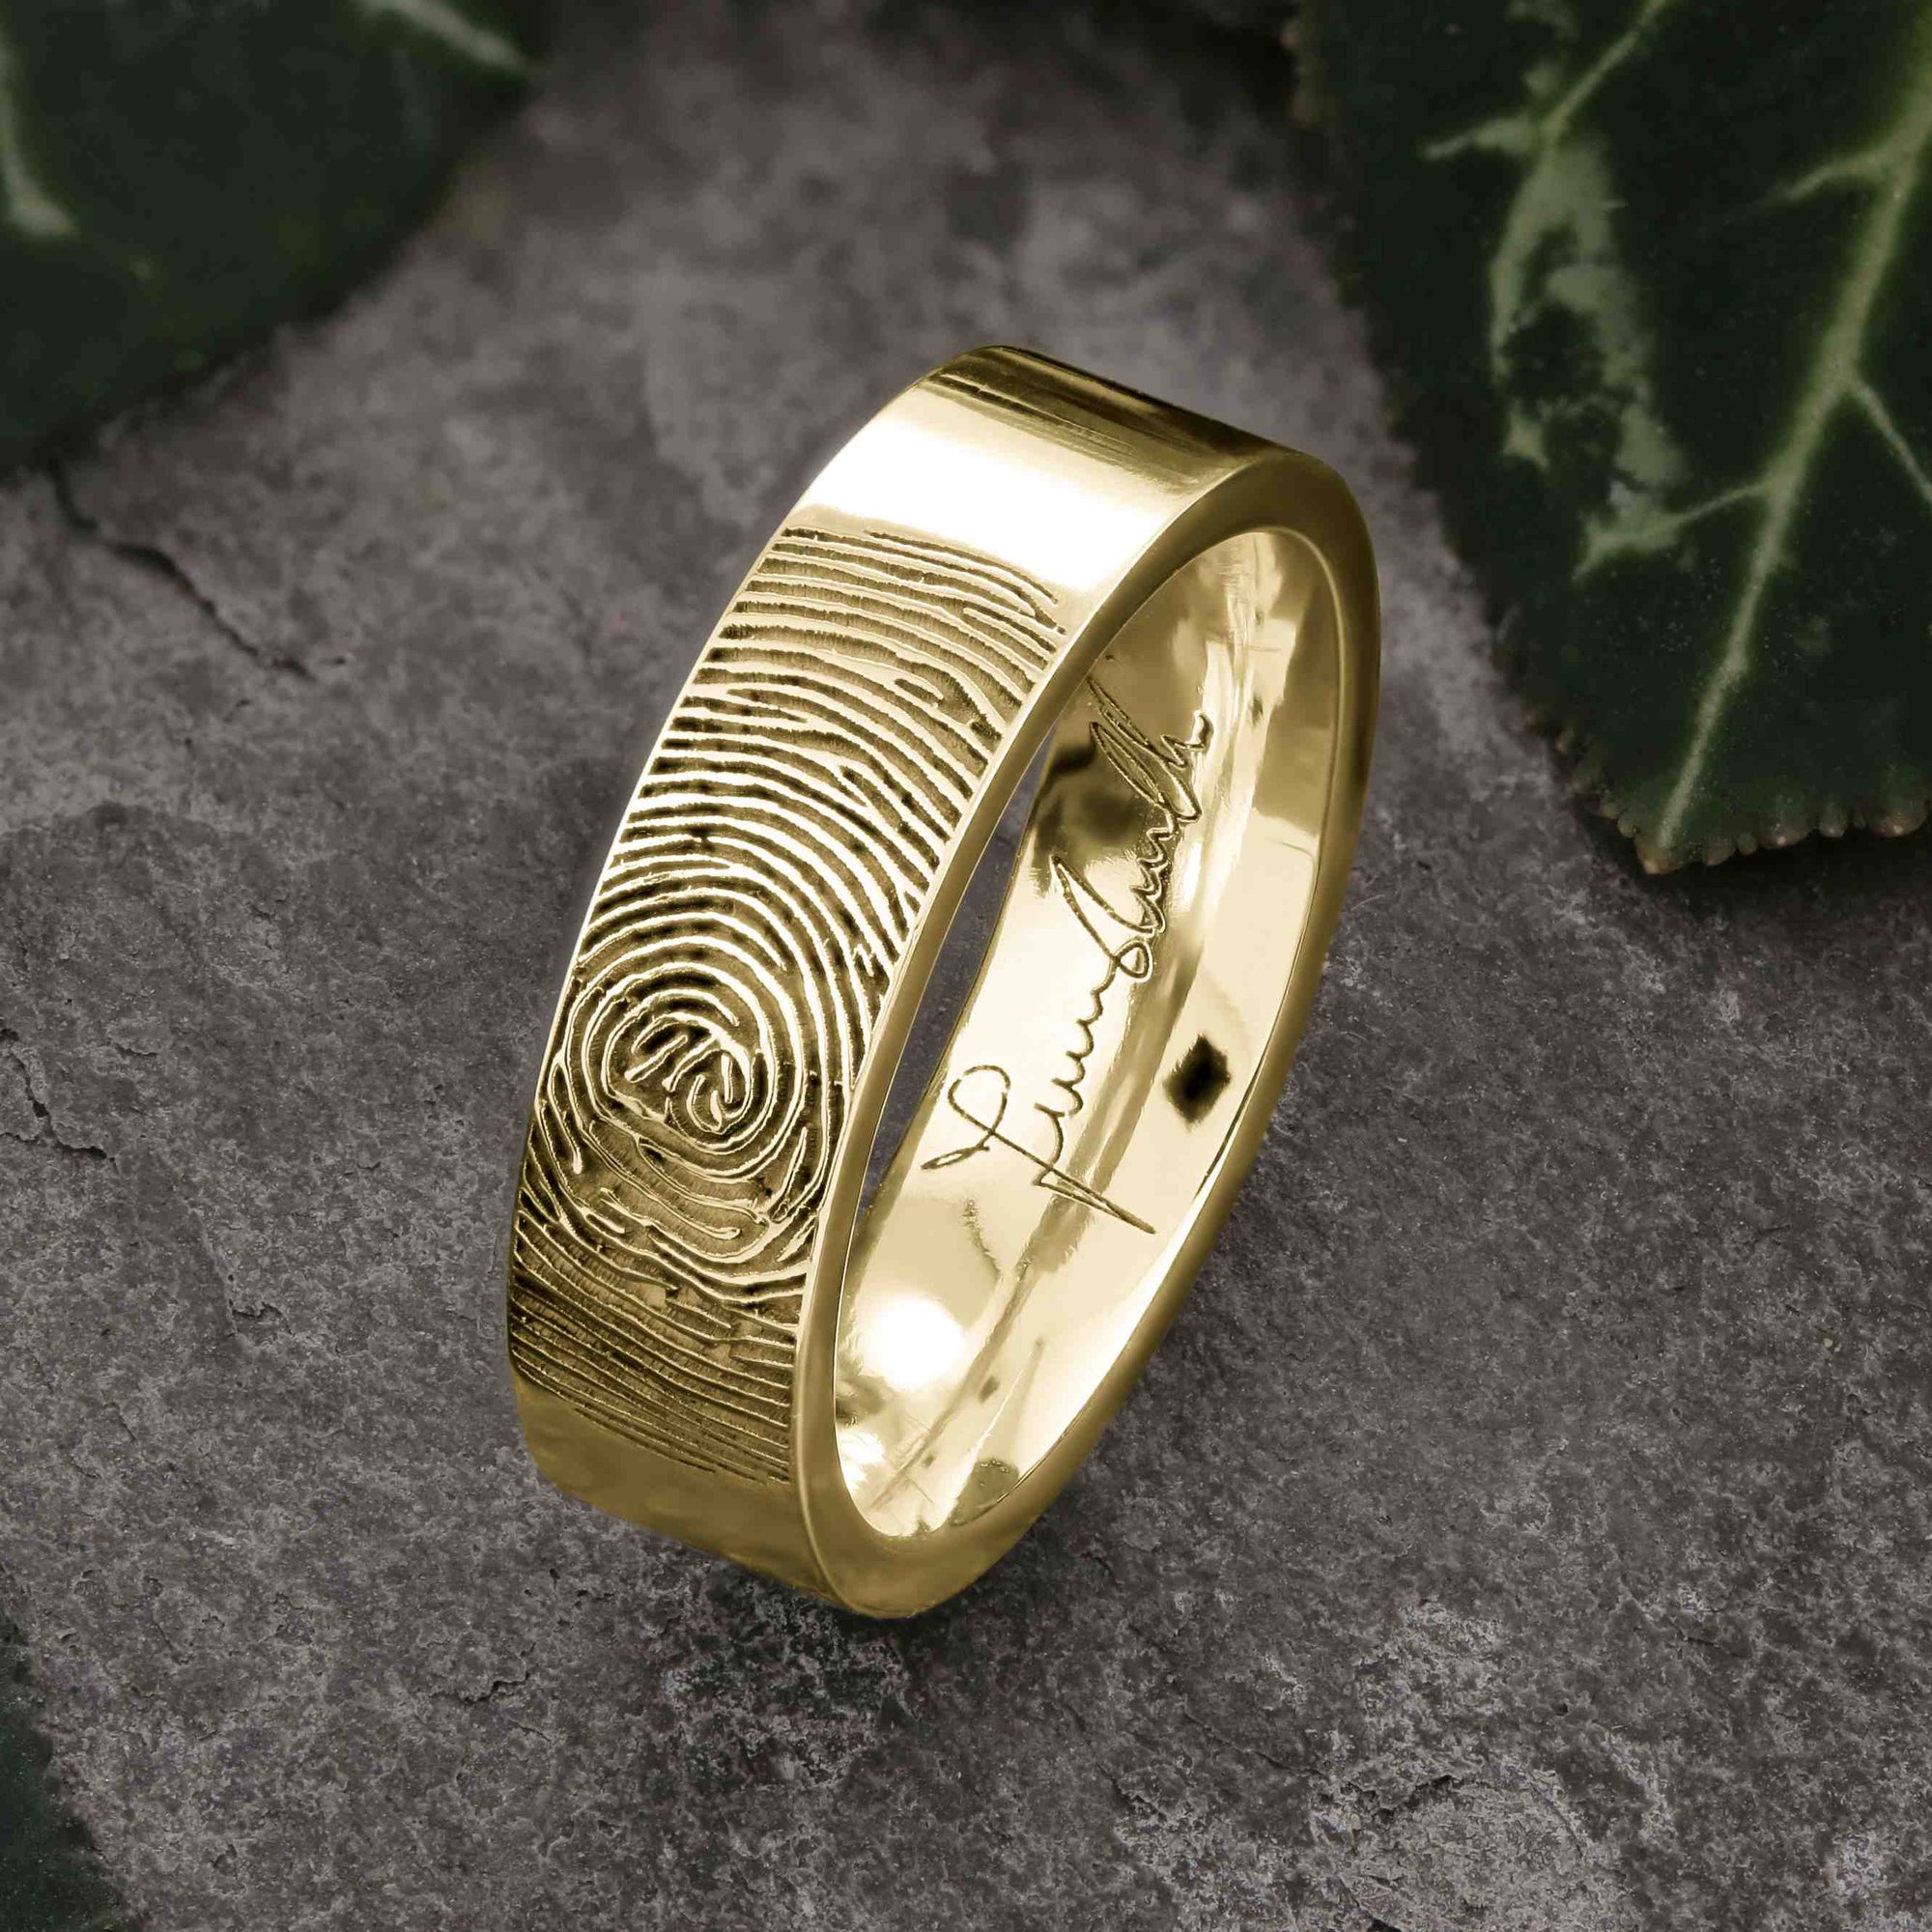 Gold Fingerprint Ring - LASER ENGRAVED GOLD FINGERPRINT RING 6mm FLAT PROFILE. Engraved Signature.